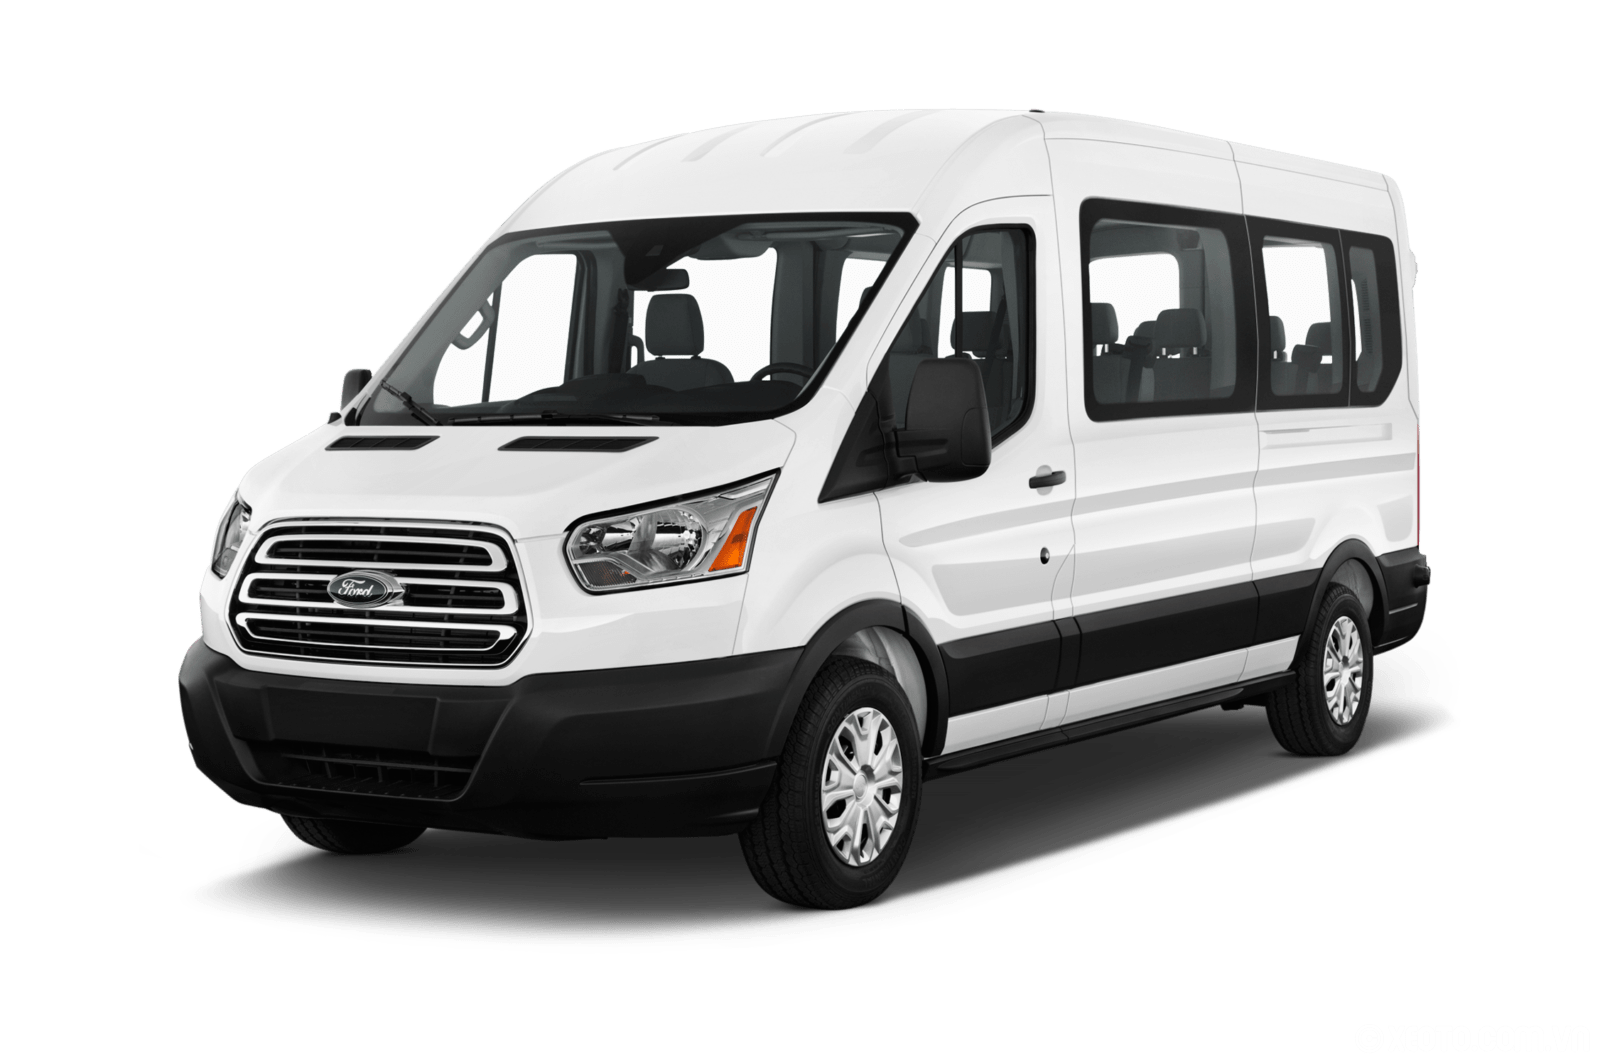 Ford Transit для перевозки лежачих больных и инвалидов